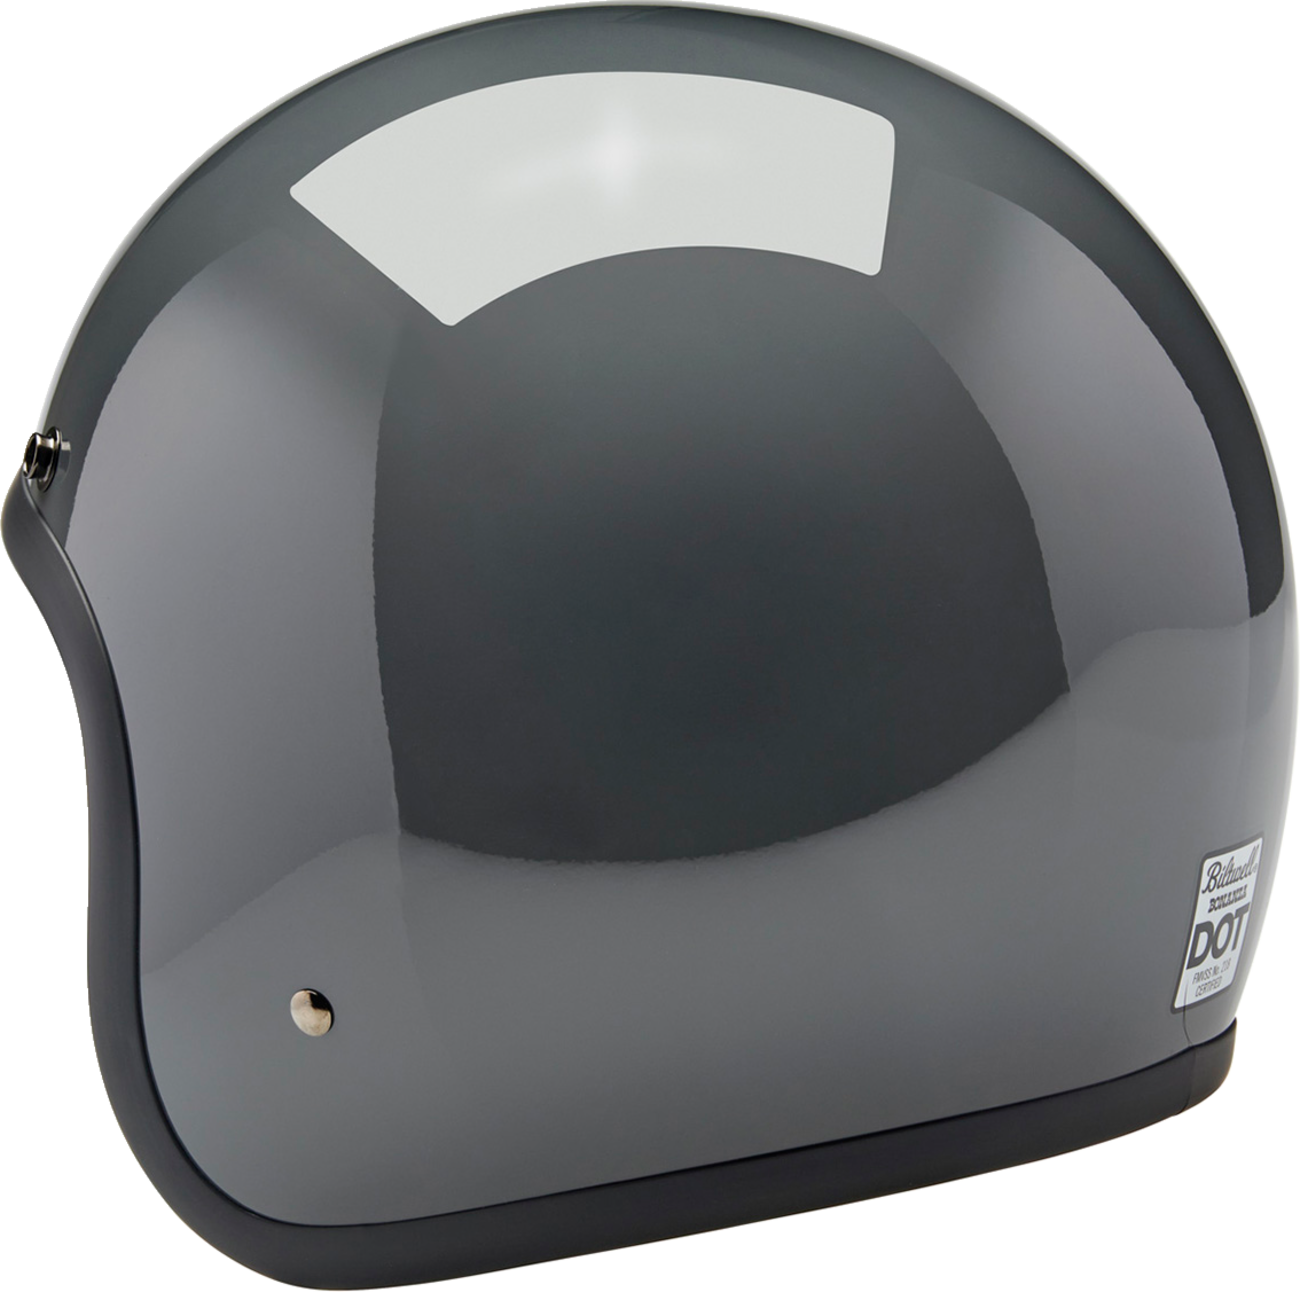 BILTWELL Bonanza Helmet - Gloss Storm Gray - 2XL 1001-165-206